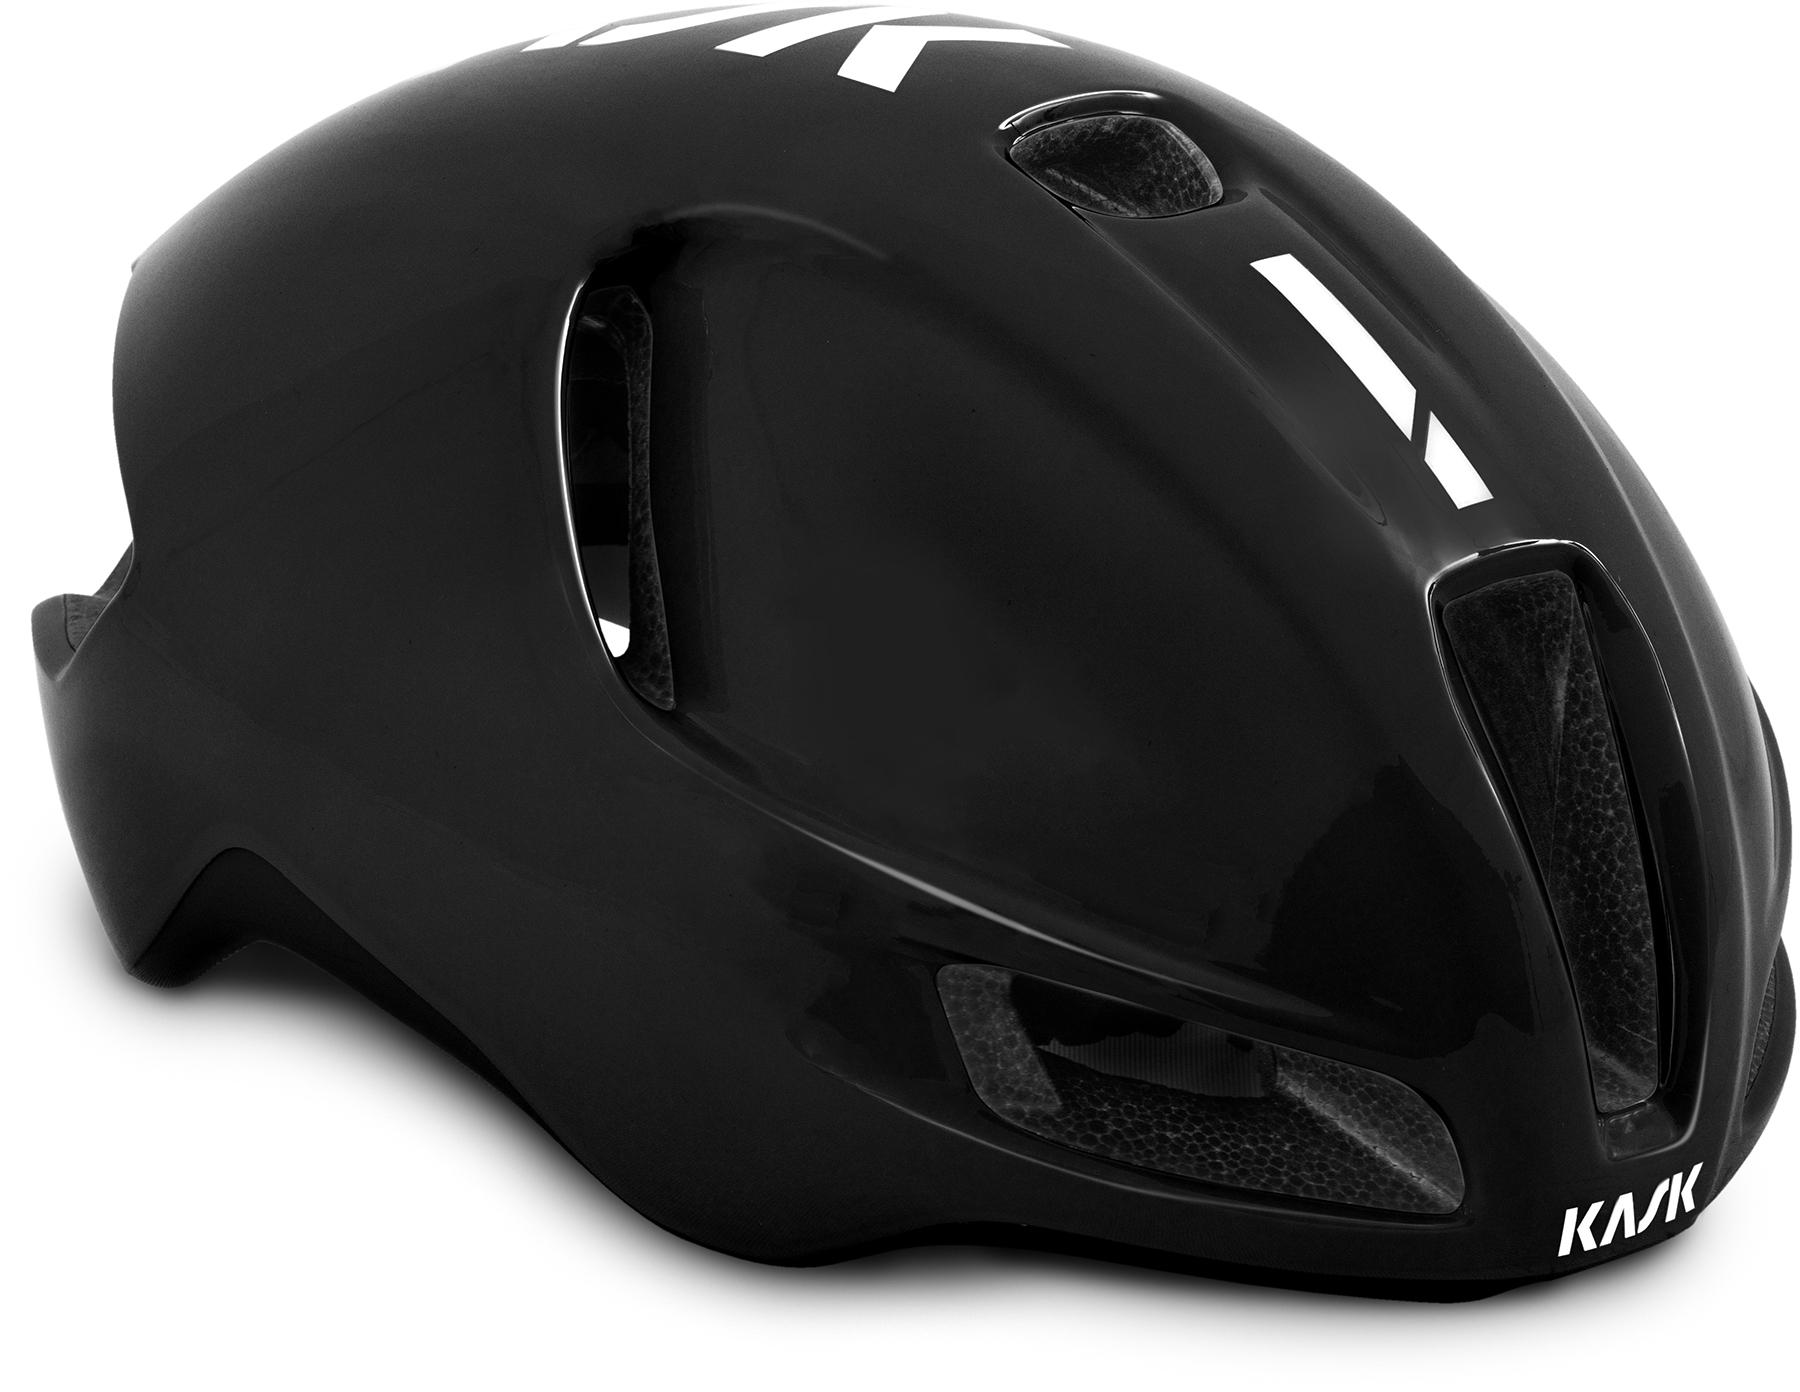 Kask Utopia Road Helmet - Black/white